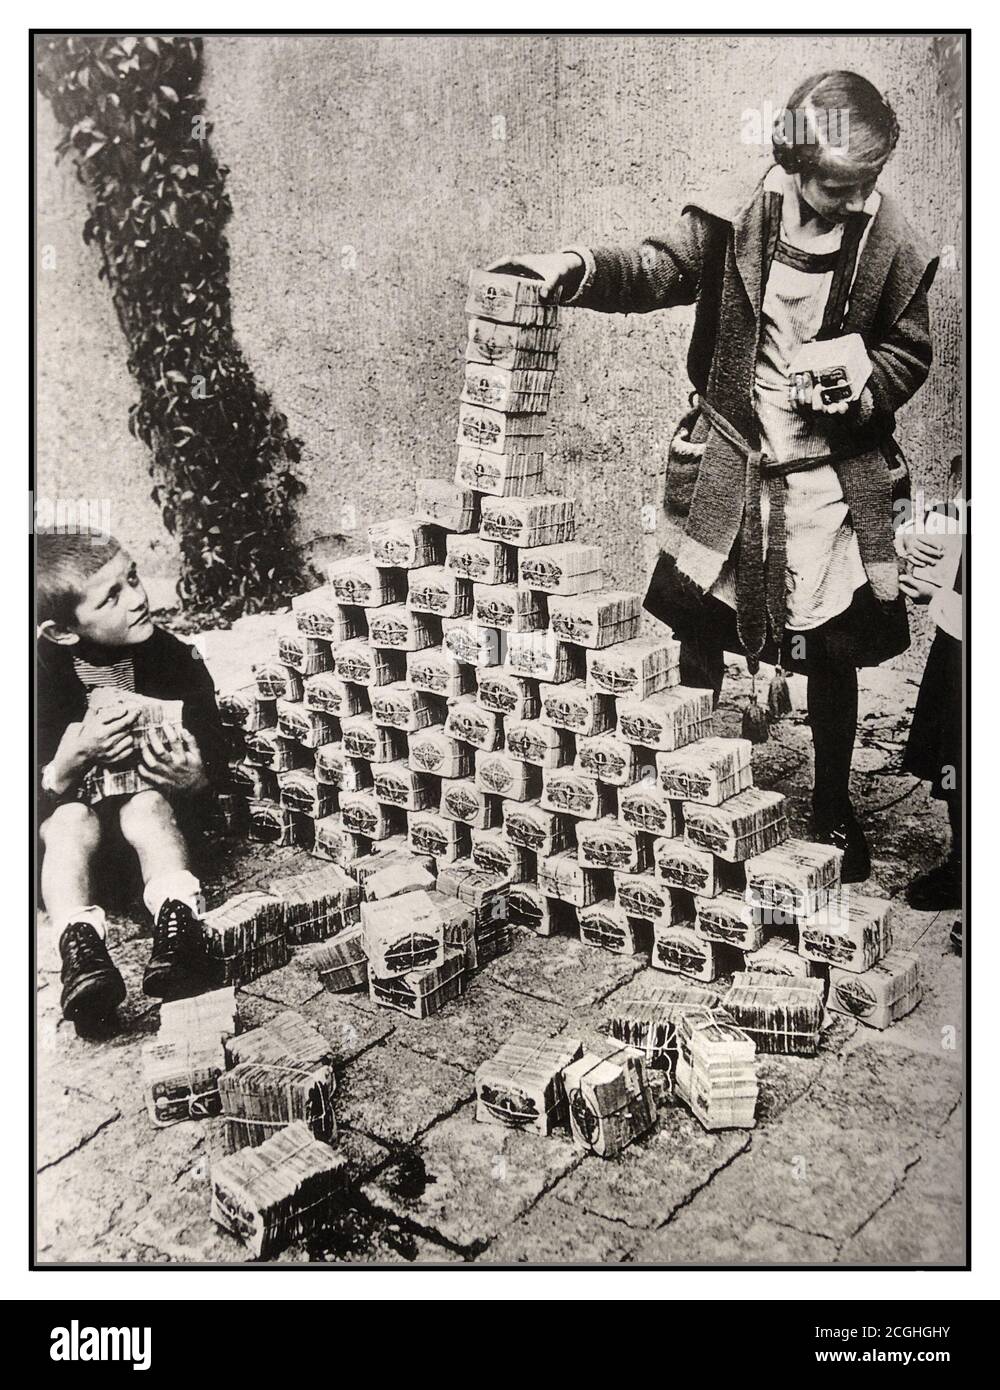 Les archives des années 1920 hyperinflation Allemagne, les enfants utilisant des billets de banque comme jouets, Allemagne, années 1920. Entre 1921 et 1923, l'hyperinflation a affecté le Papiermark allemand, la monnaie de la République de Weimar, principalement en 1923. Elle a provoqué une instabilité politique interne considérable dans le pays, l'occupation de la Ruhr par la France et la Belgique ainsi que la misère de la population en général. Imprimer plus d'argent est exactement ce que l'Allemagne de Weimar a fait en 1922. Pour répondre aux réparations alliées, ils ont imprimé plus d'argent, ce qui a causé l'hyperinflation des années 1920. L'hyperinflation a conduit à l'effondrement de l'économie. Banque D'Images